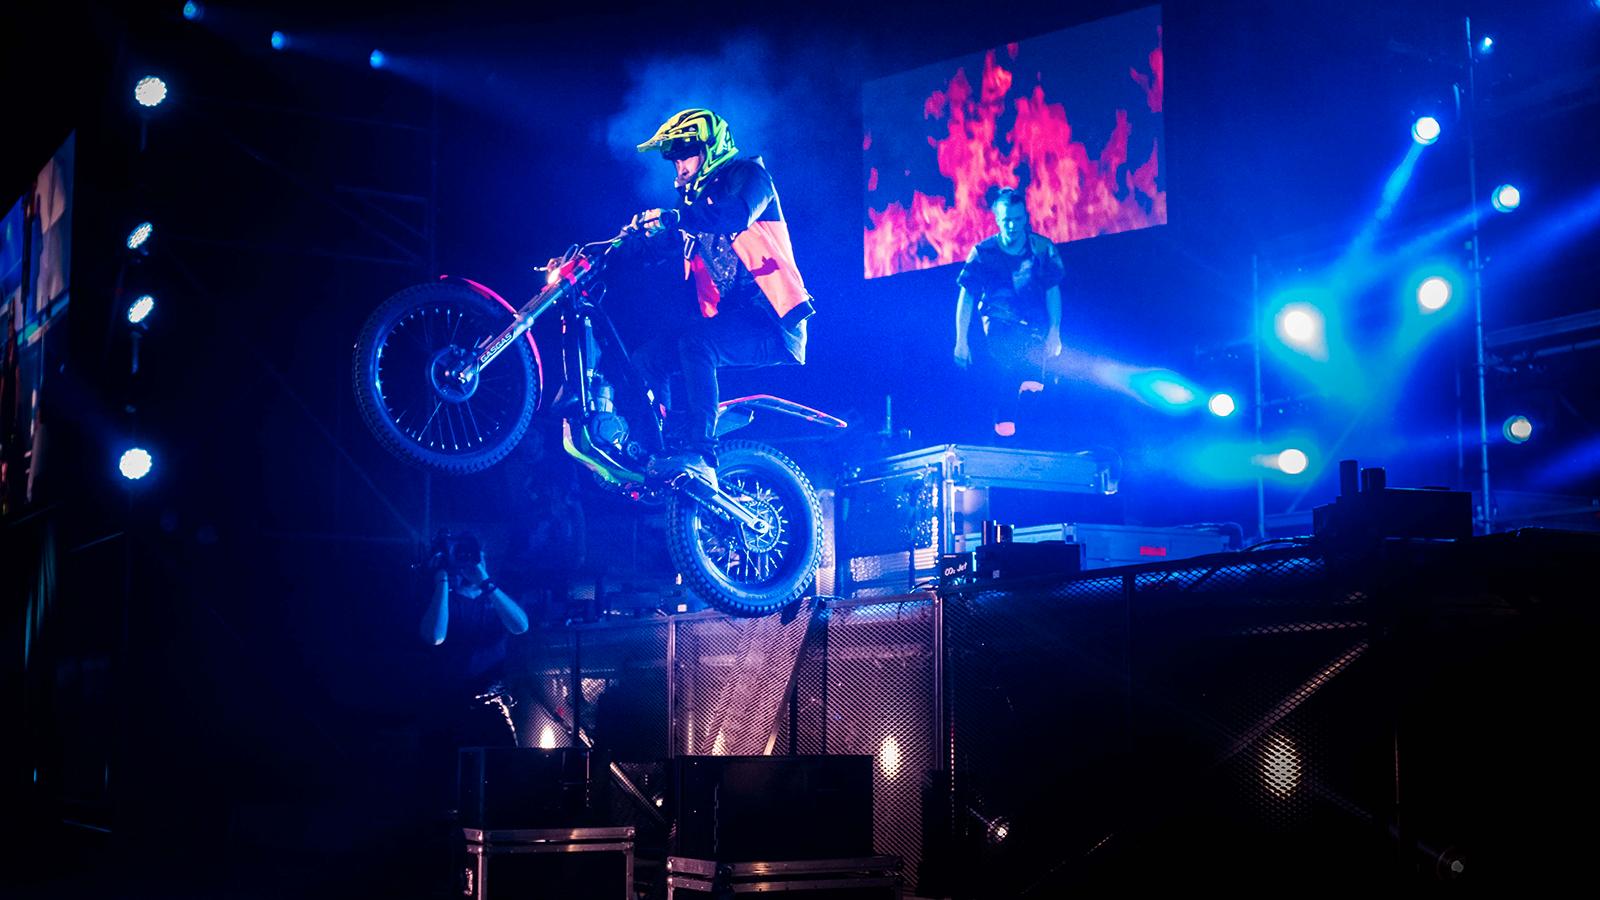 Rackartygarna bjuder på volter och stunts på motorcykel.